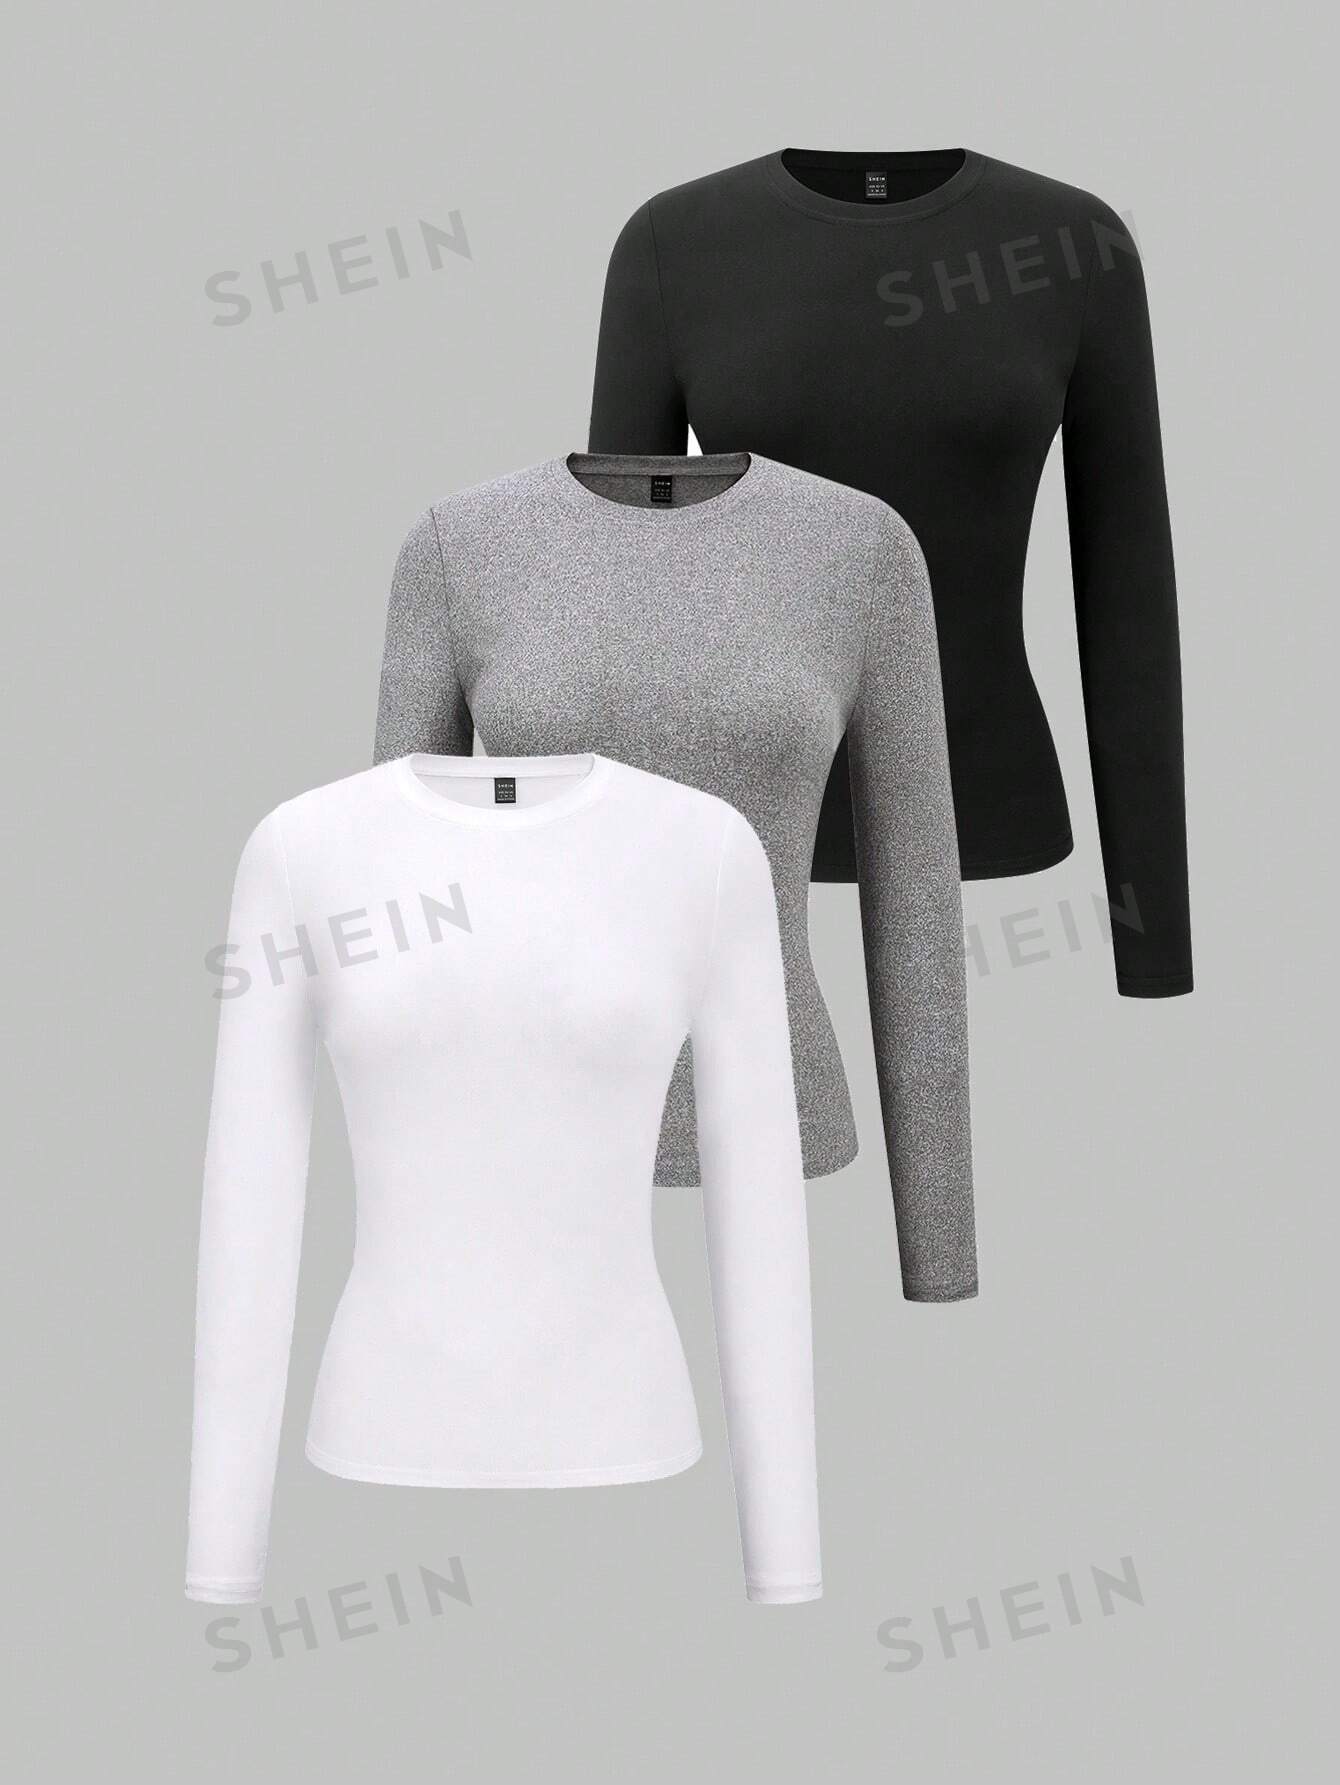 shein essnce трехцветное облегающее боди футболка с длинными рукавами многоцветный SHEIN Essnce однотонная приталенная футболка с длинными рукавами, многоцветный